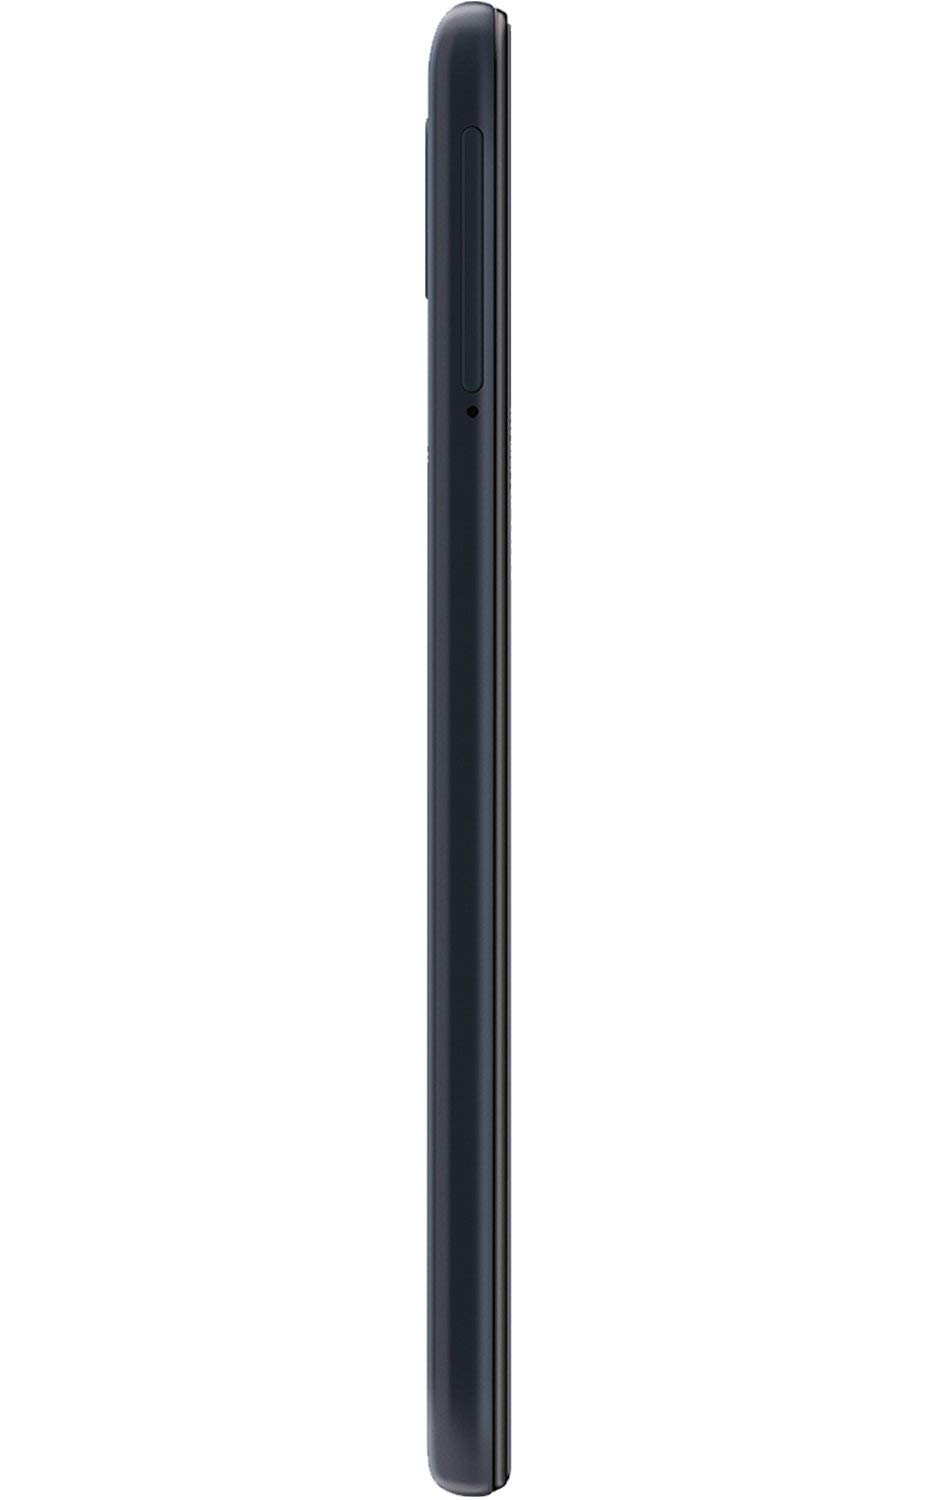 Samsung Galaxy A10e 32GB A102U GSM Unlocked Phone - Black (Renewed)